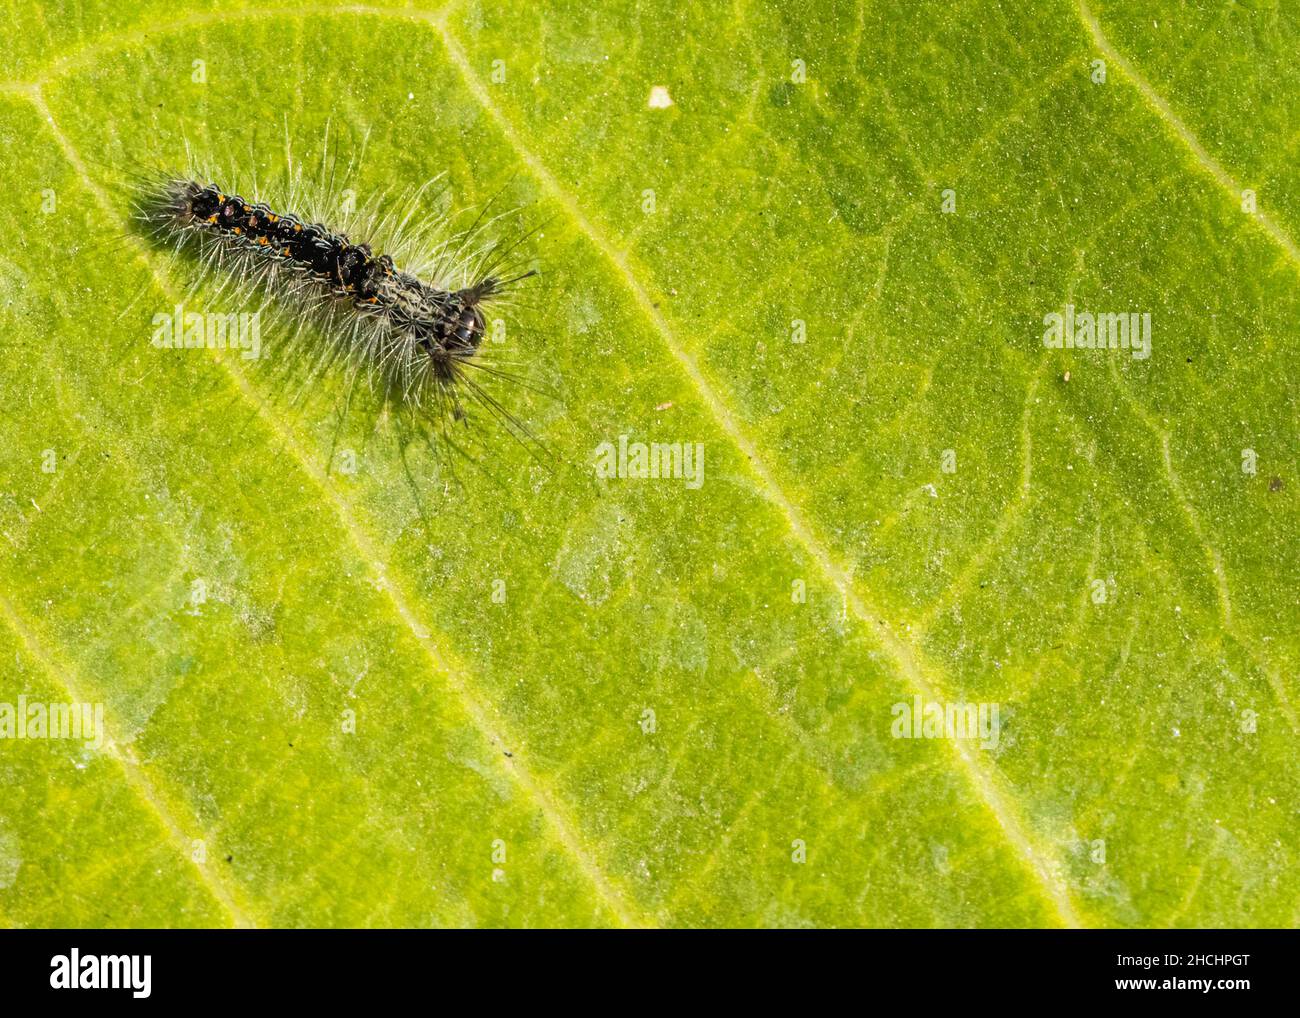 Caterpillar caminando sobre una hoja verde Foto de stock